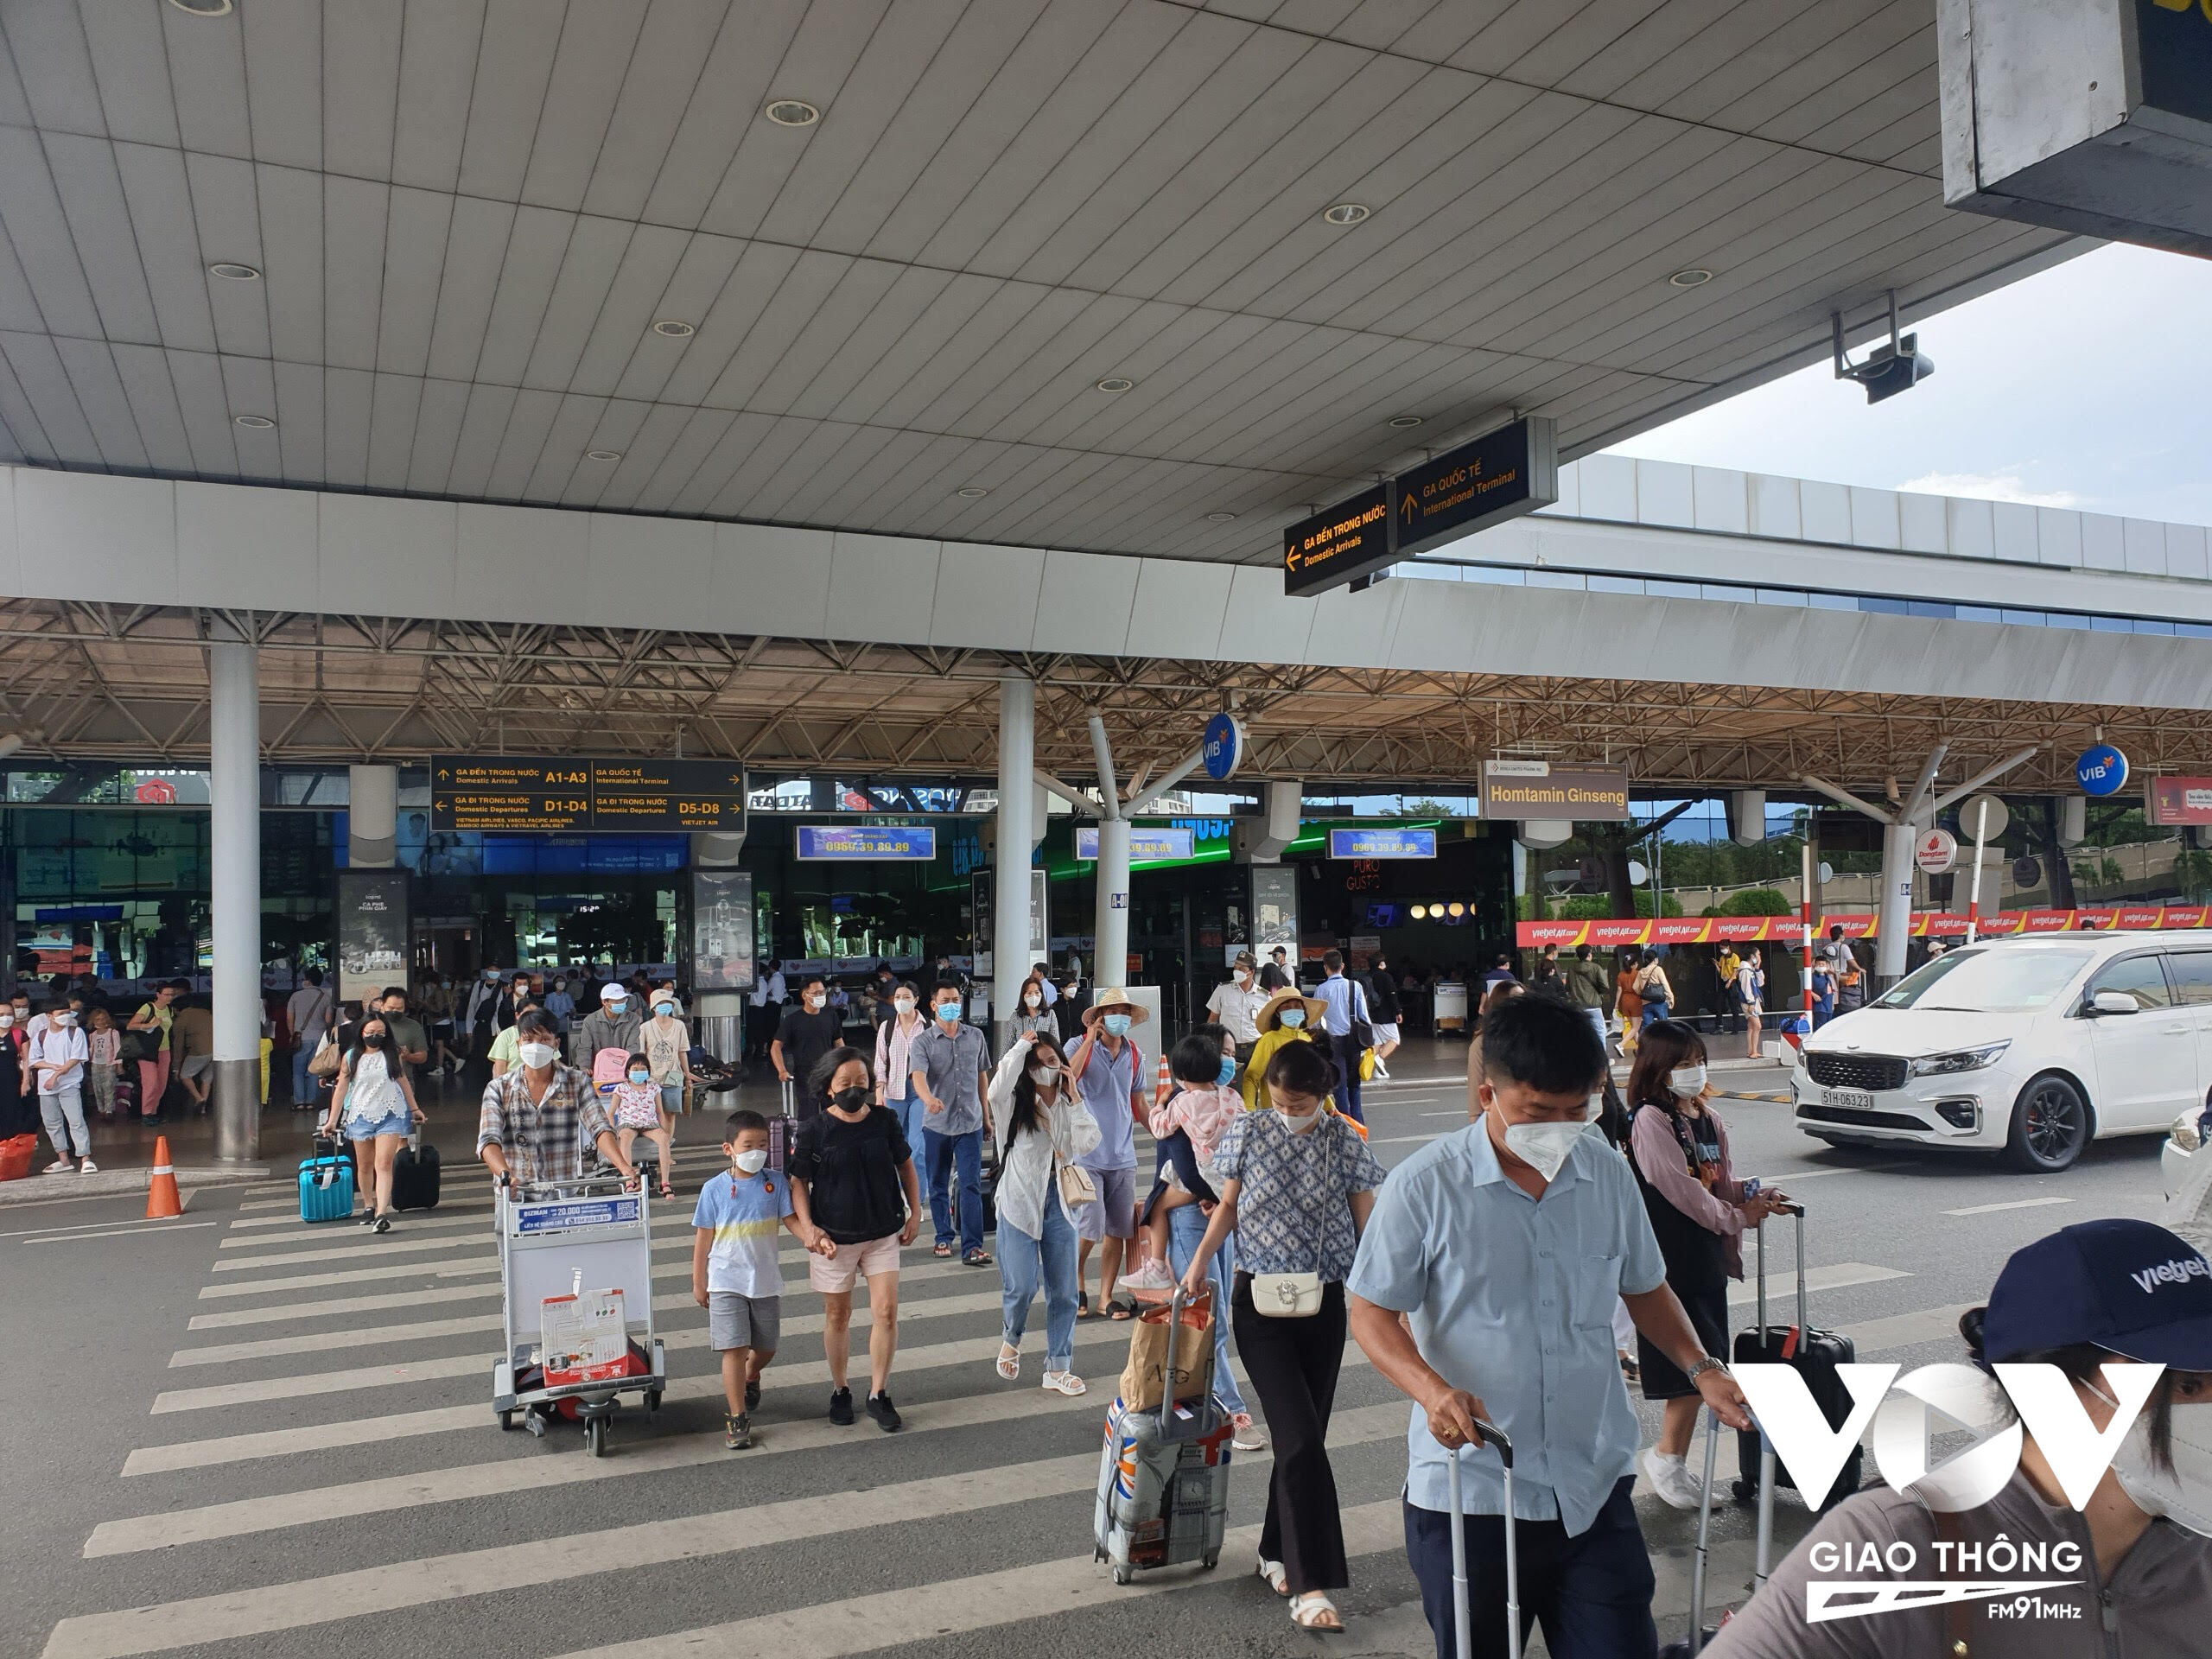 Để giải toả lượng khách trở lại TP.HCM rất lớn, Cảng hàng không quốc tế Tân Sơn Nhất cho biết đã bổ sung nhiều thông tin trên các màn hình LED hướng dẫn sơ đồ di chuyển, các luồng xe… Trong đó, thông tin về xe buýt được in, trưng bày dọc lối đi để hành khách dễ nhận diện.